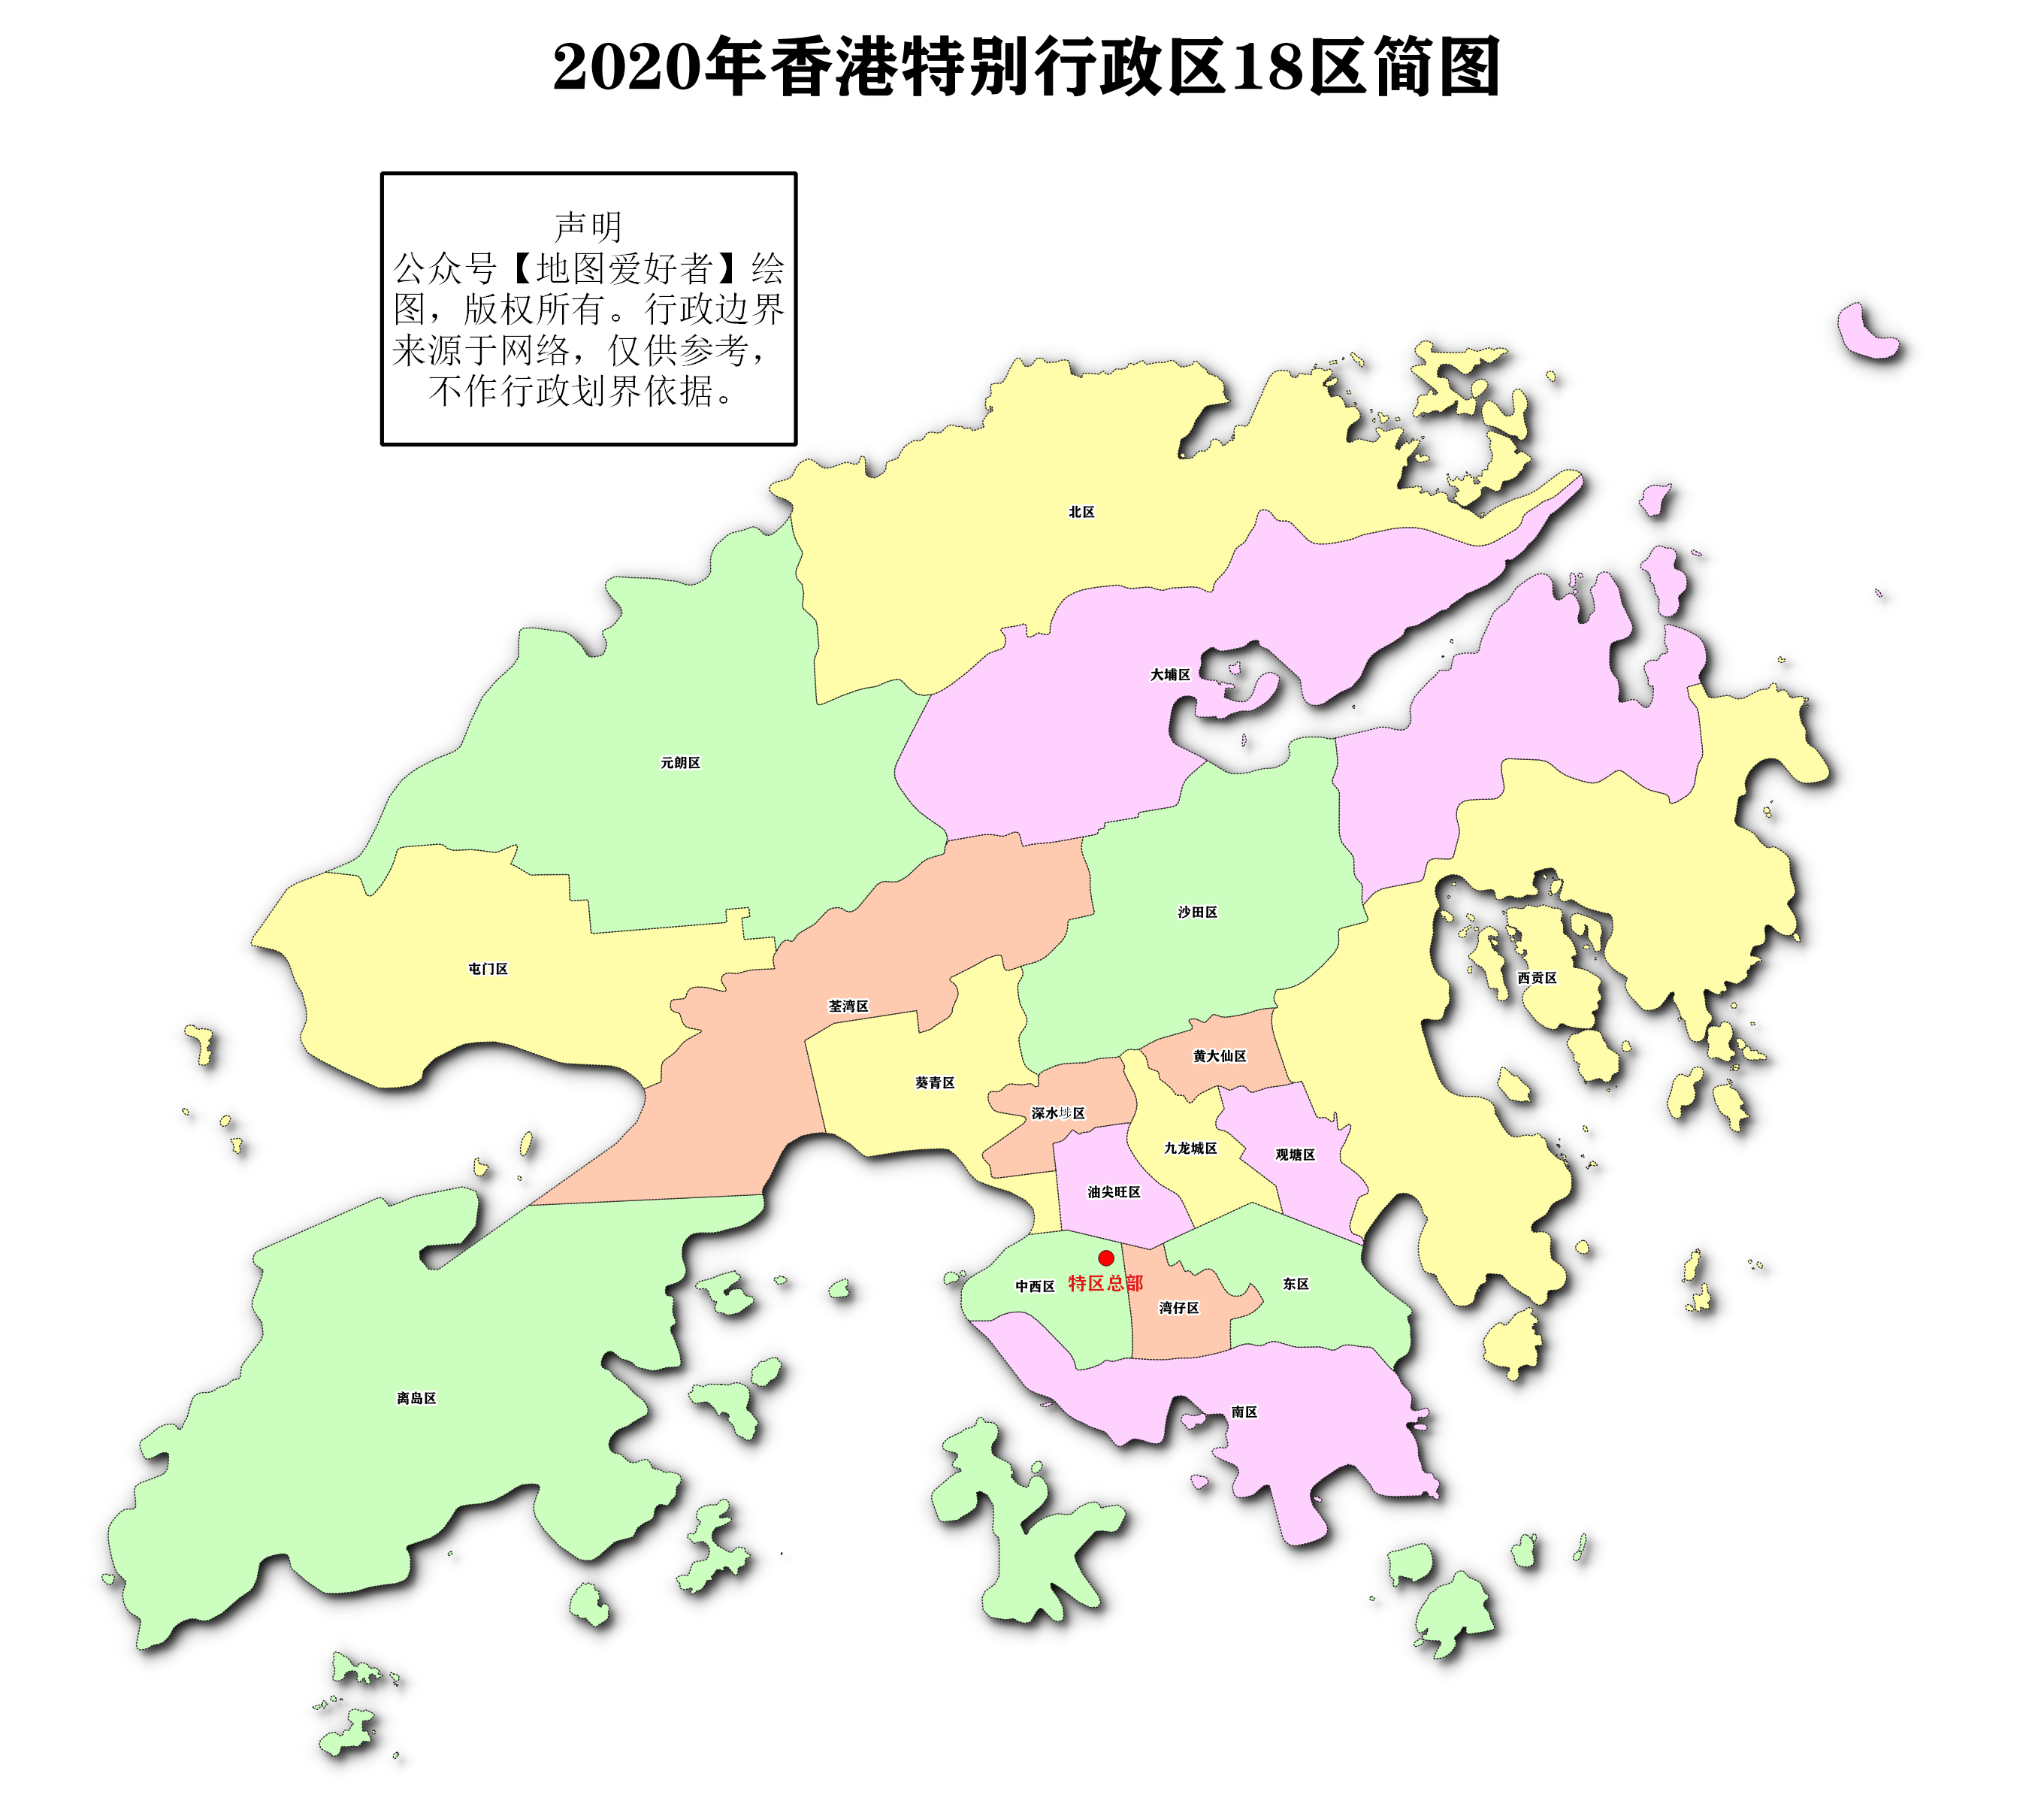 香港各区地图,香港地图全图大图 - 伤感说说吧